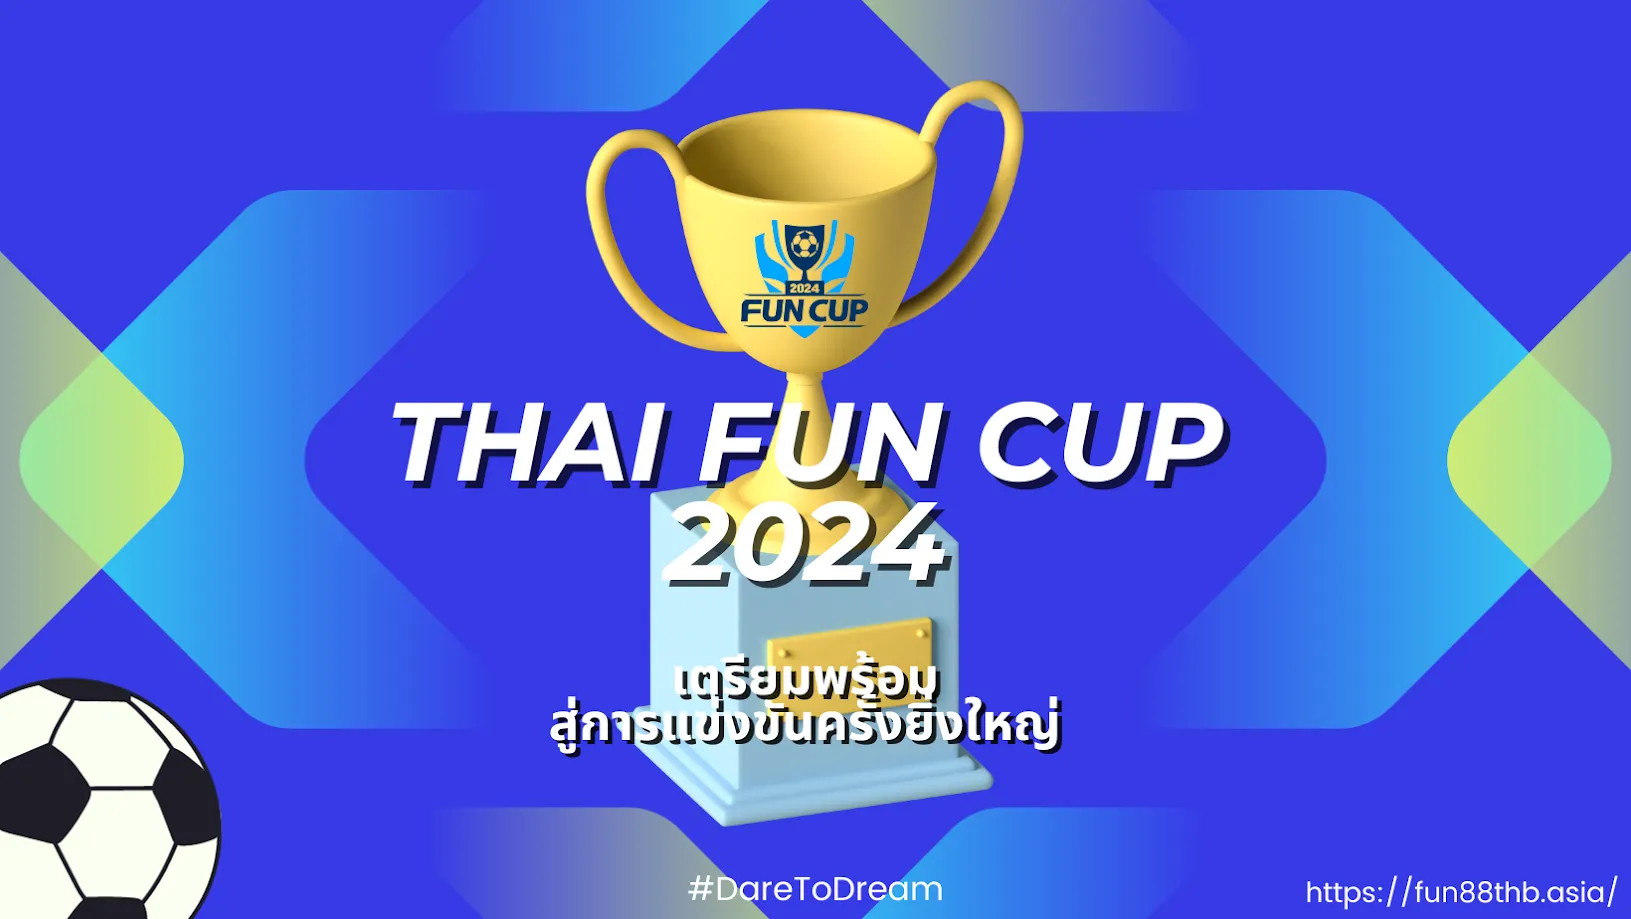 Fun Cup 2024 | เตรียมพร้อมสู่การแข่งขันครั้งยิ่งใหญ่